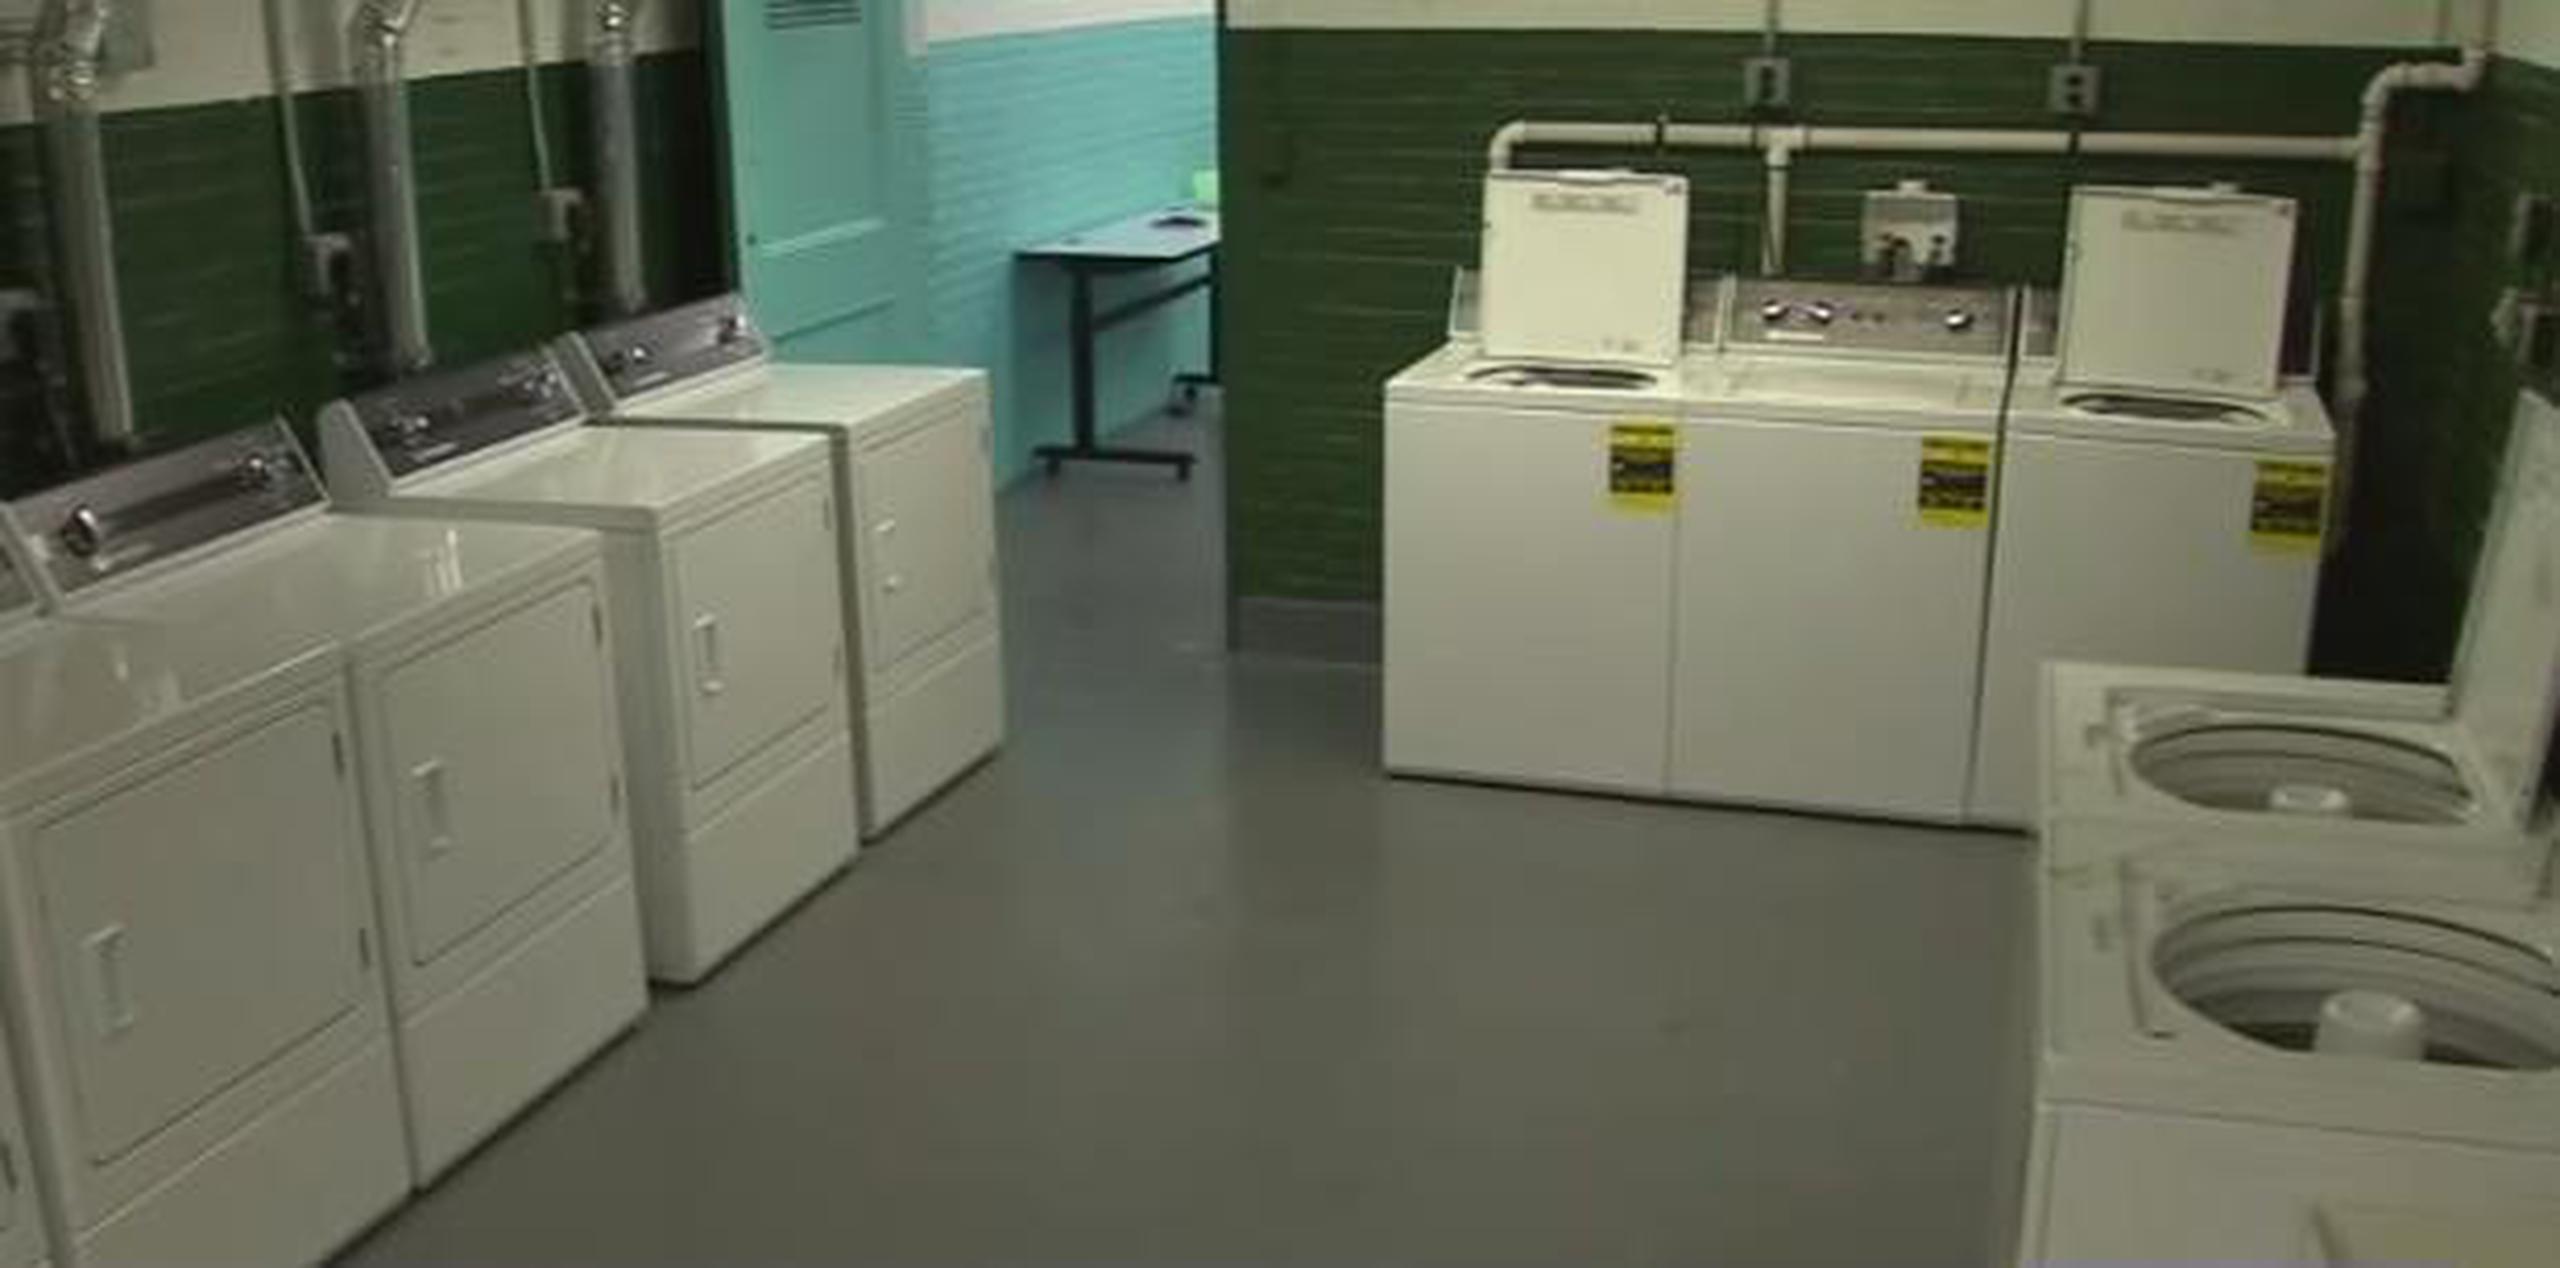 Ahora el vestuario del equipo de fútbol es una lavandería. (YouTube / Eyewitness News ABC7NY)